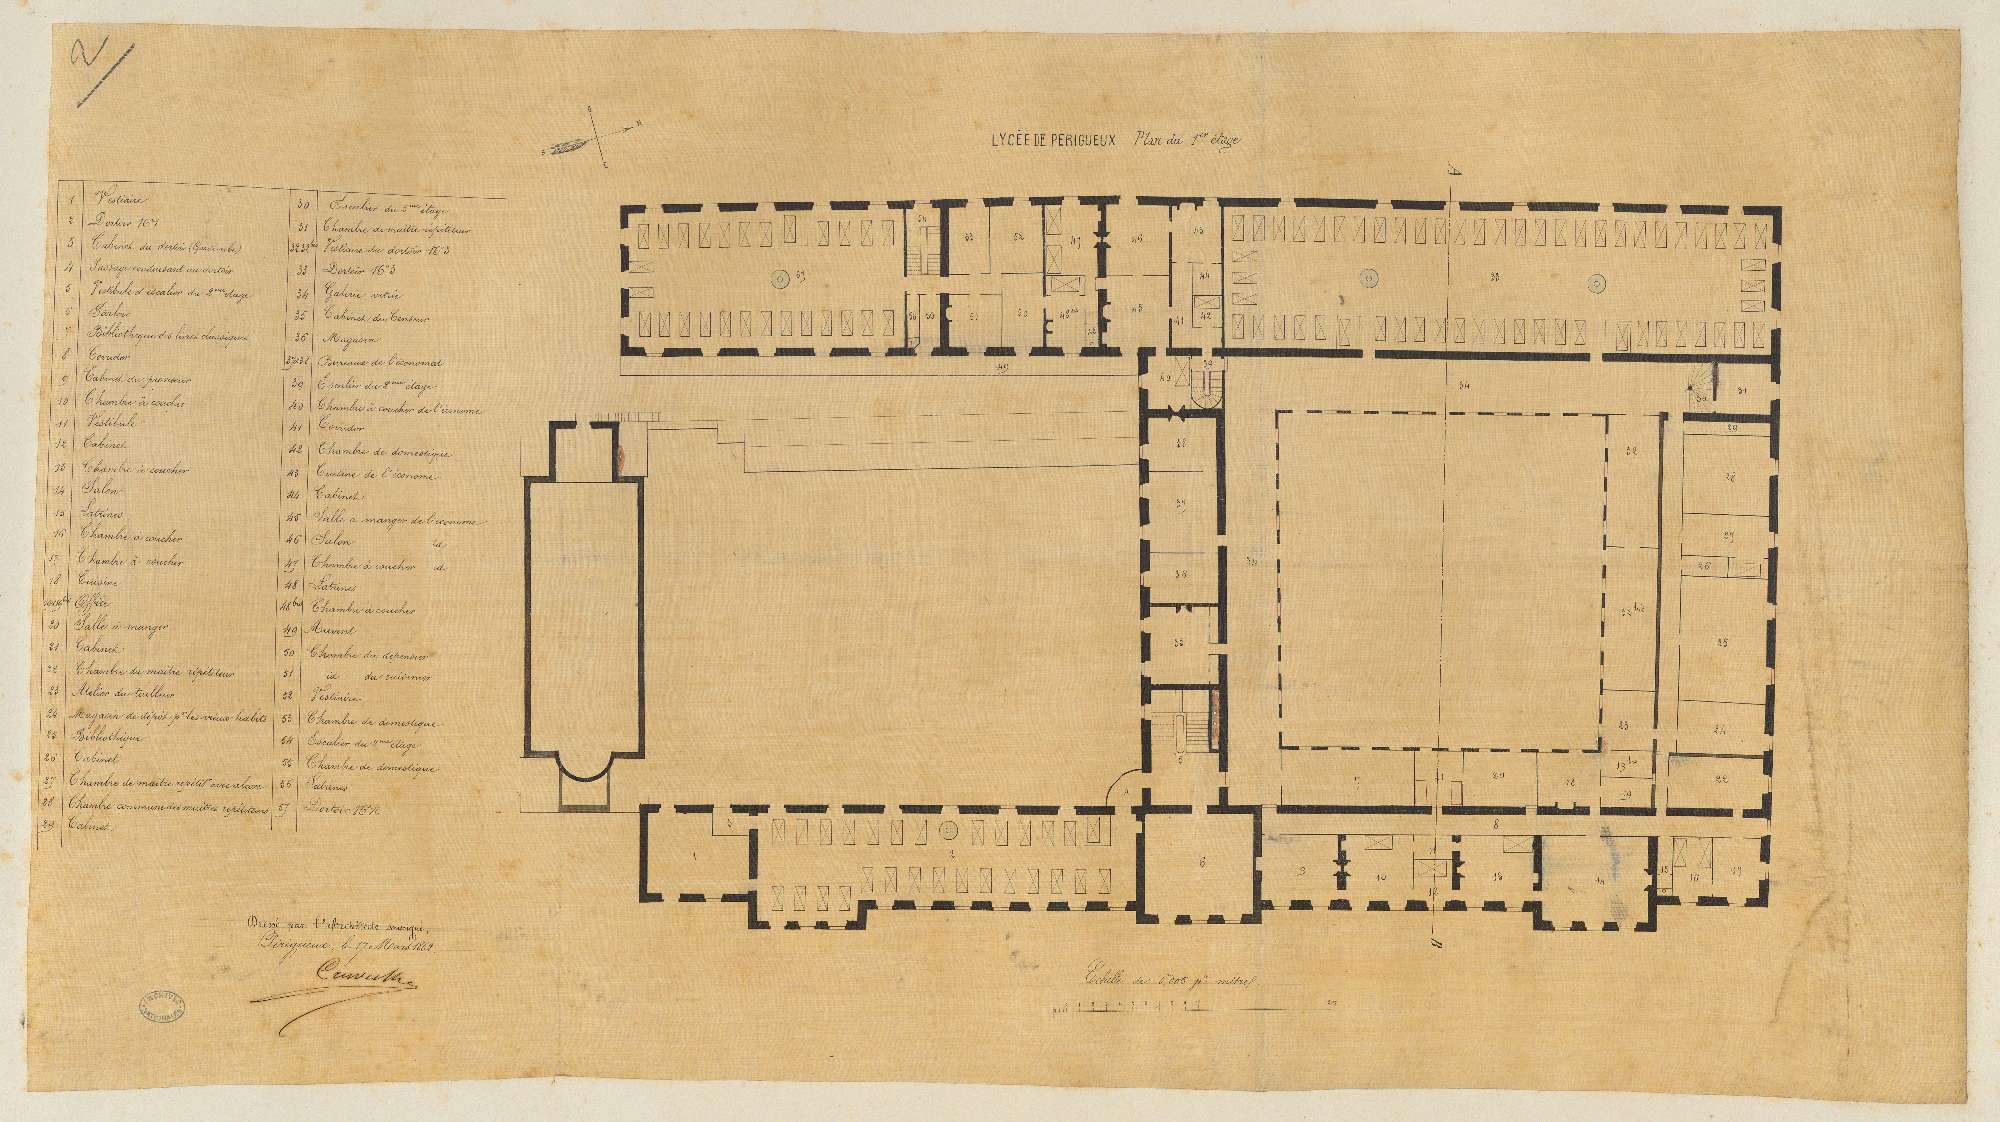 Lycée impérial. Plan du 1er étage. 0.005 pm. Signé de l'architecte Elie Poncet Cruvelier, 17 mars 1862. (AN)